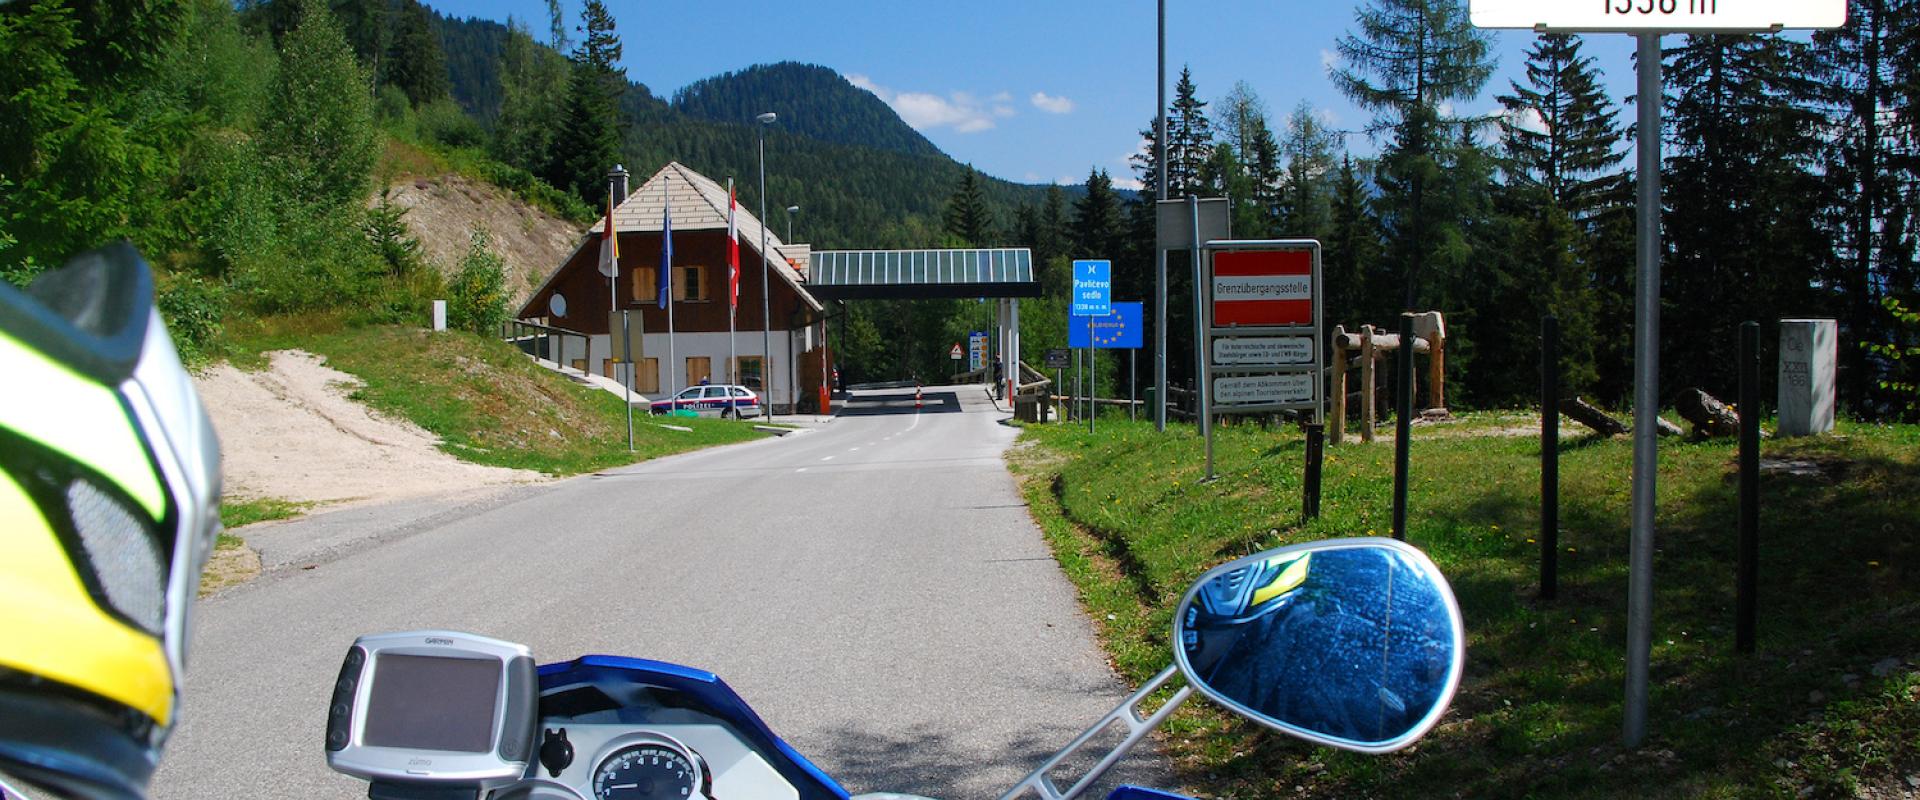 Motorradfahrer auf der Passhöhe des Paulitschsattel, mit Blick auf das Passschild